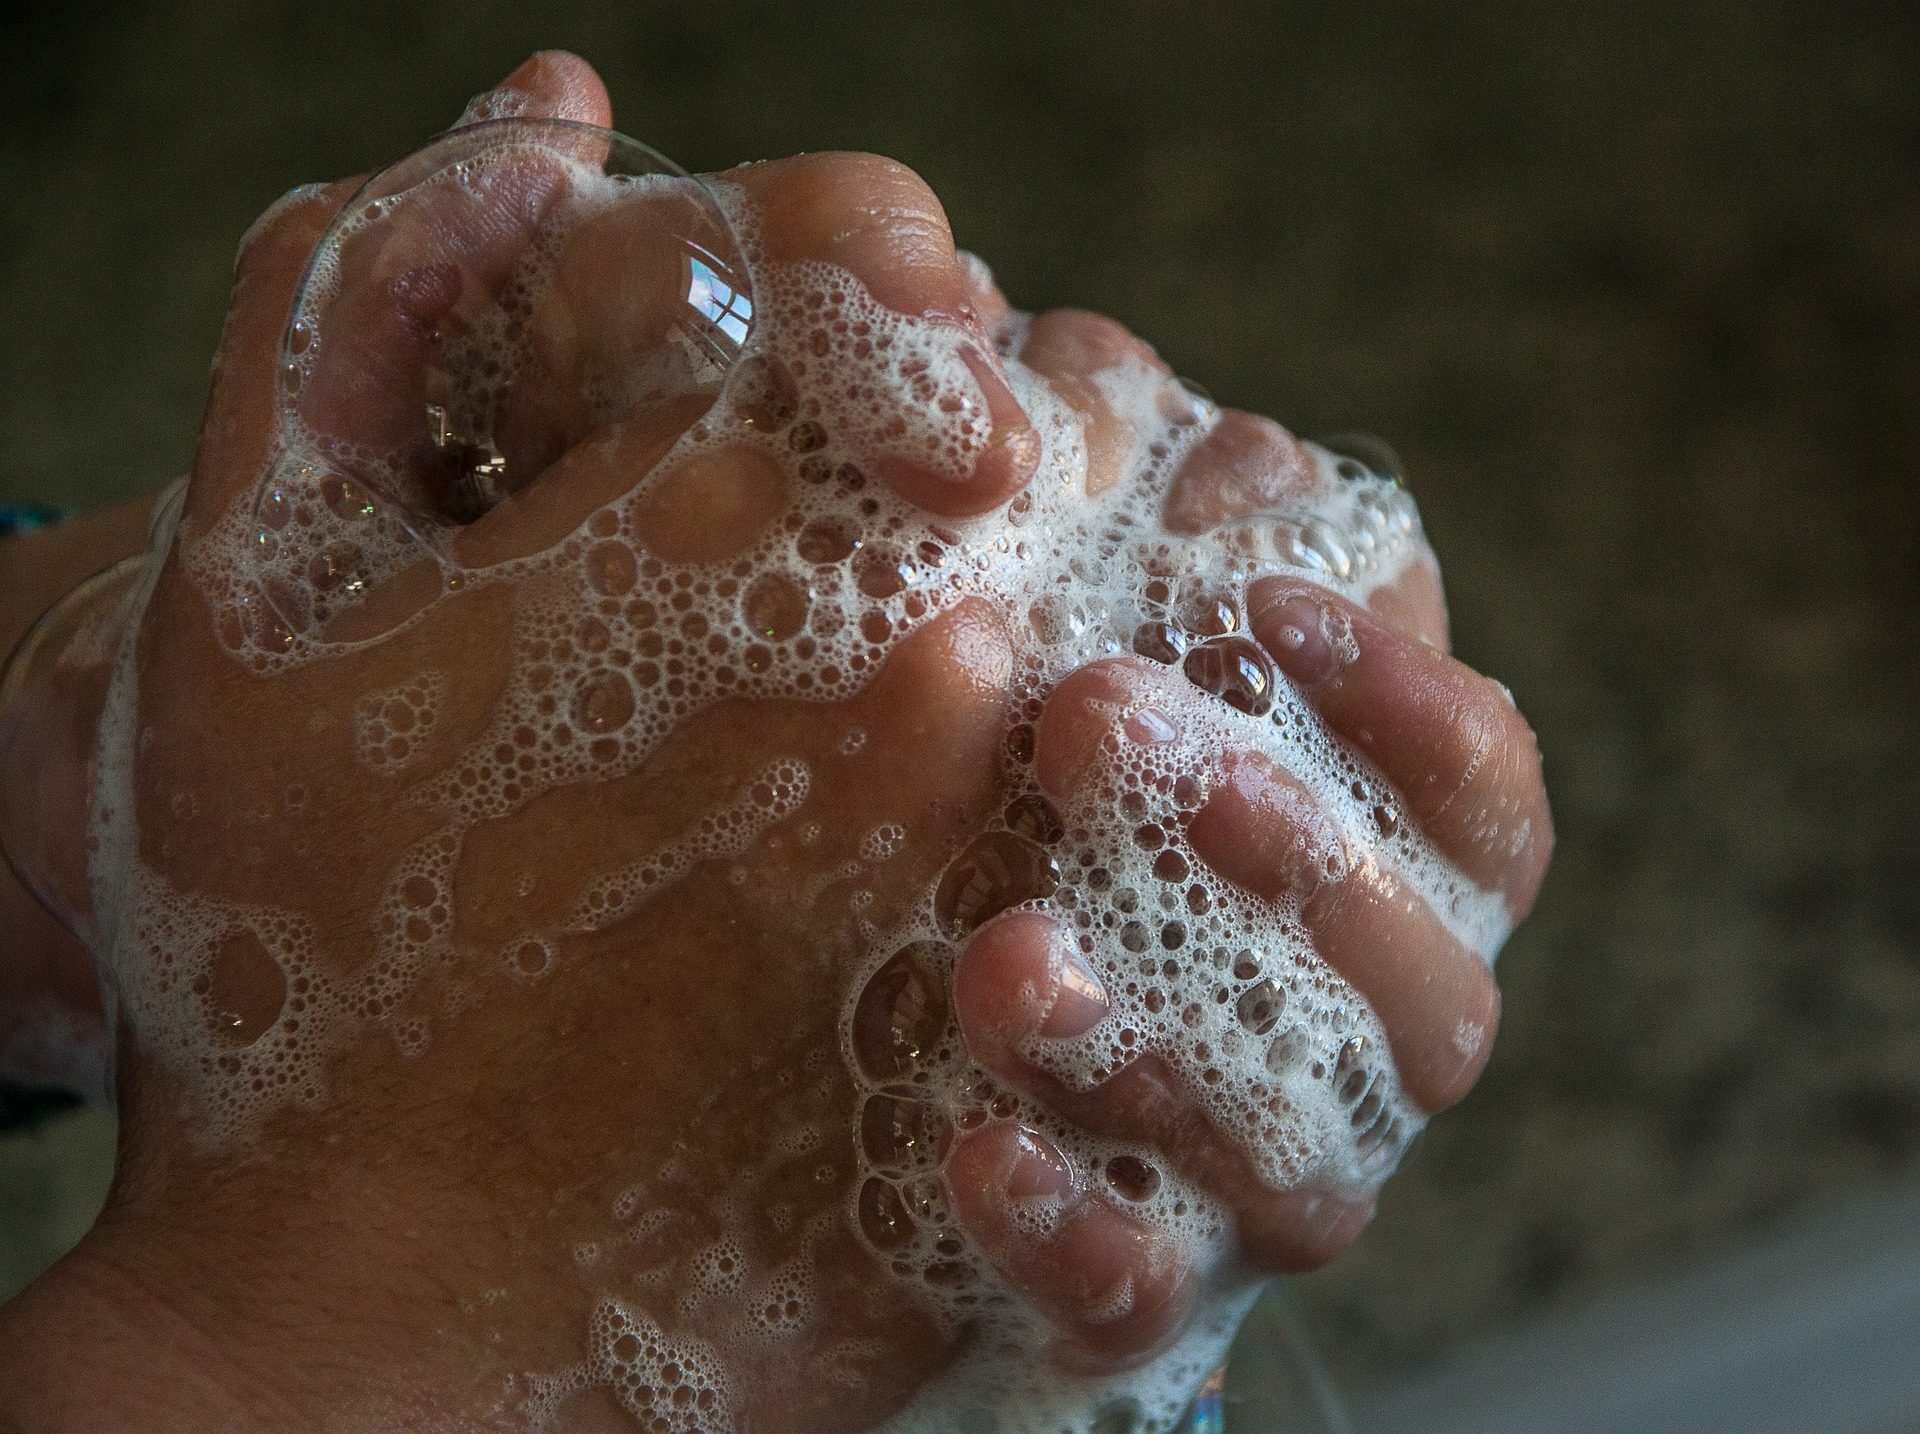 Пришло время учиться правильно мыть руки, чтобы защититься от коронавируса COVID-19